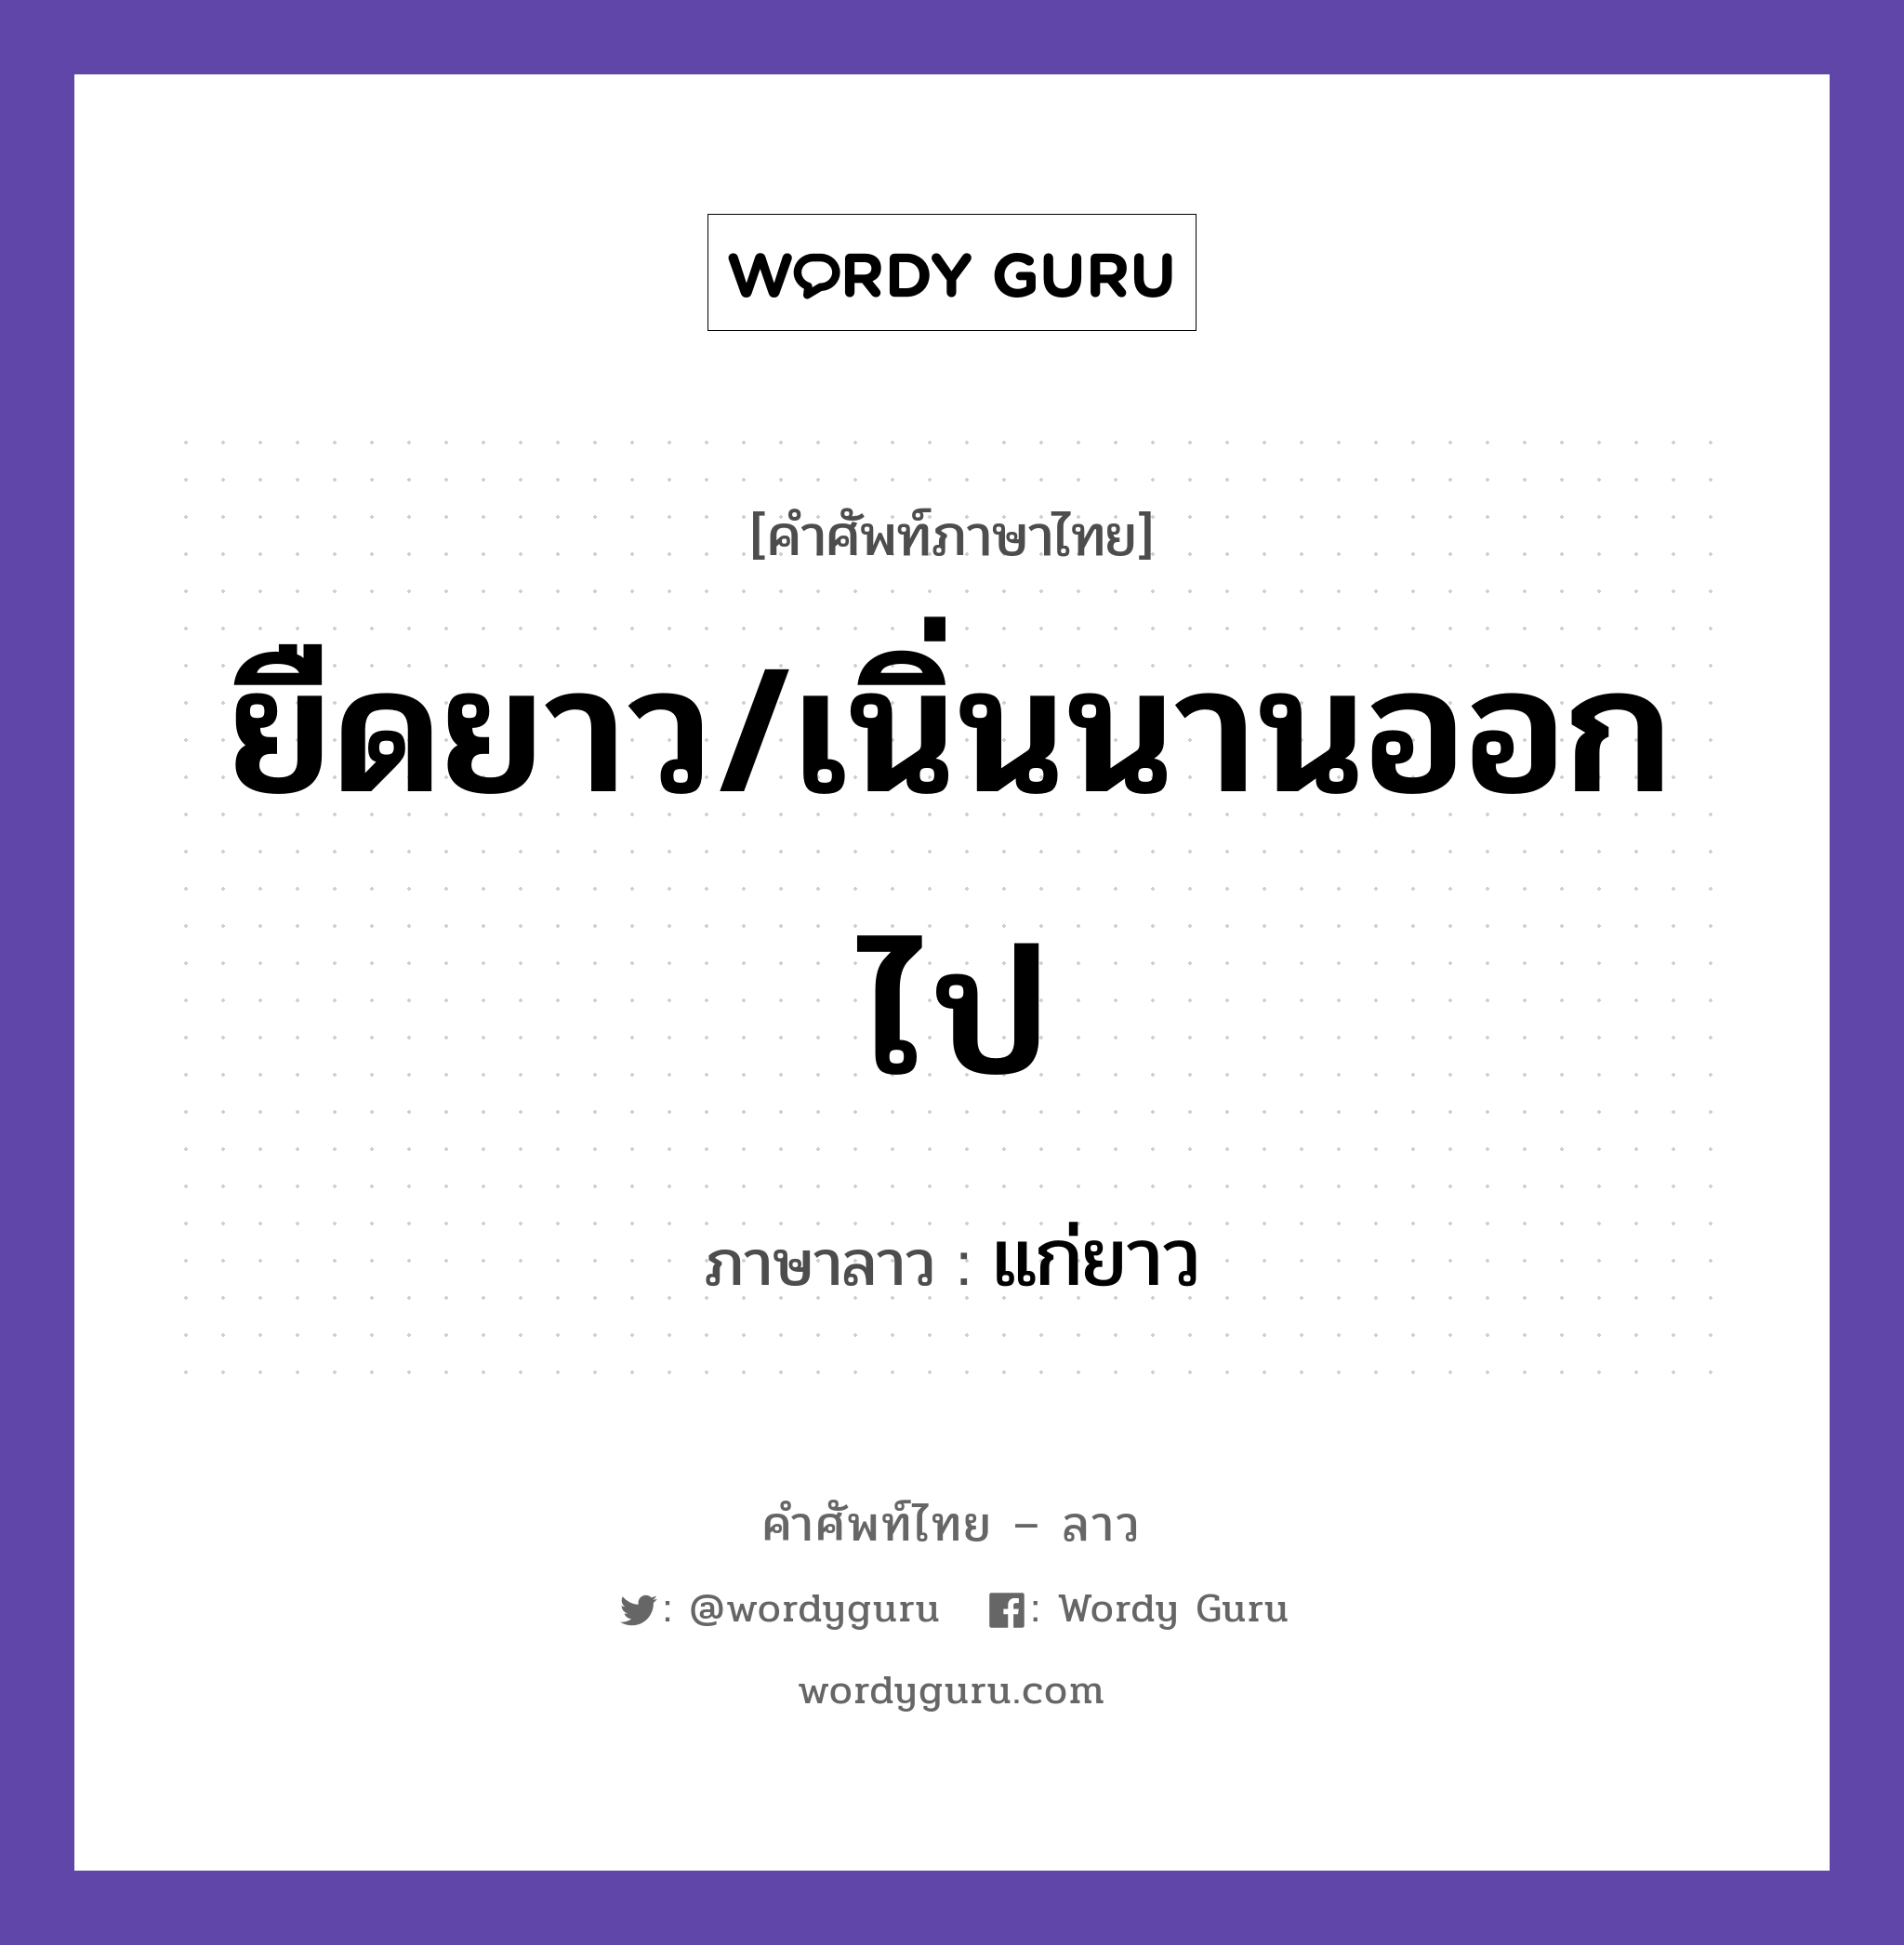 แก่ยาว ภาษาไทย?, คำศัพท์ภาษาไทย - ลาว แก่ยาว ภาษาลาว ยืดยาว/เนิ่นนานออกไป หมวด คำที่ใช้ในการประชุมทางวิชาการ หมวด คำที่ใช้ในการประชุมทางวิชาการ